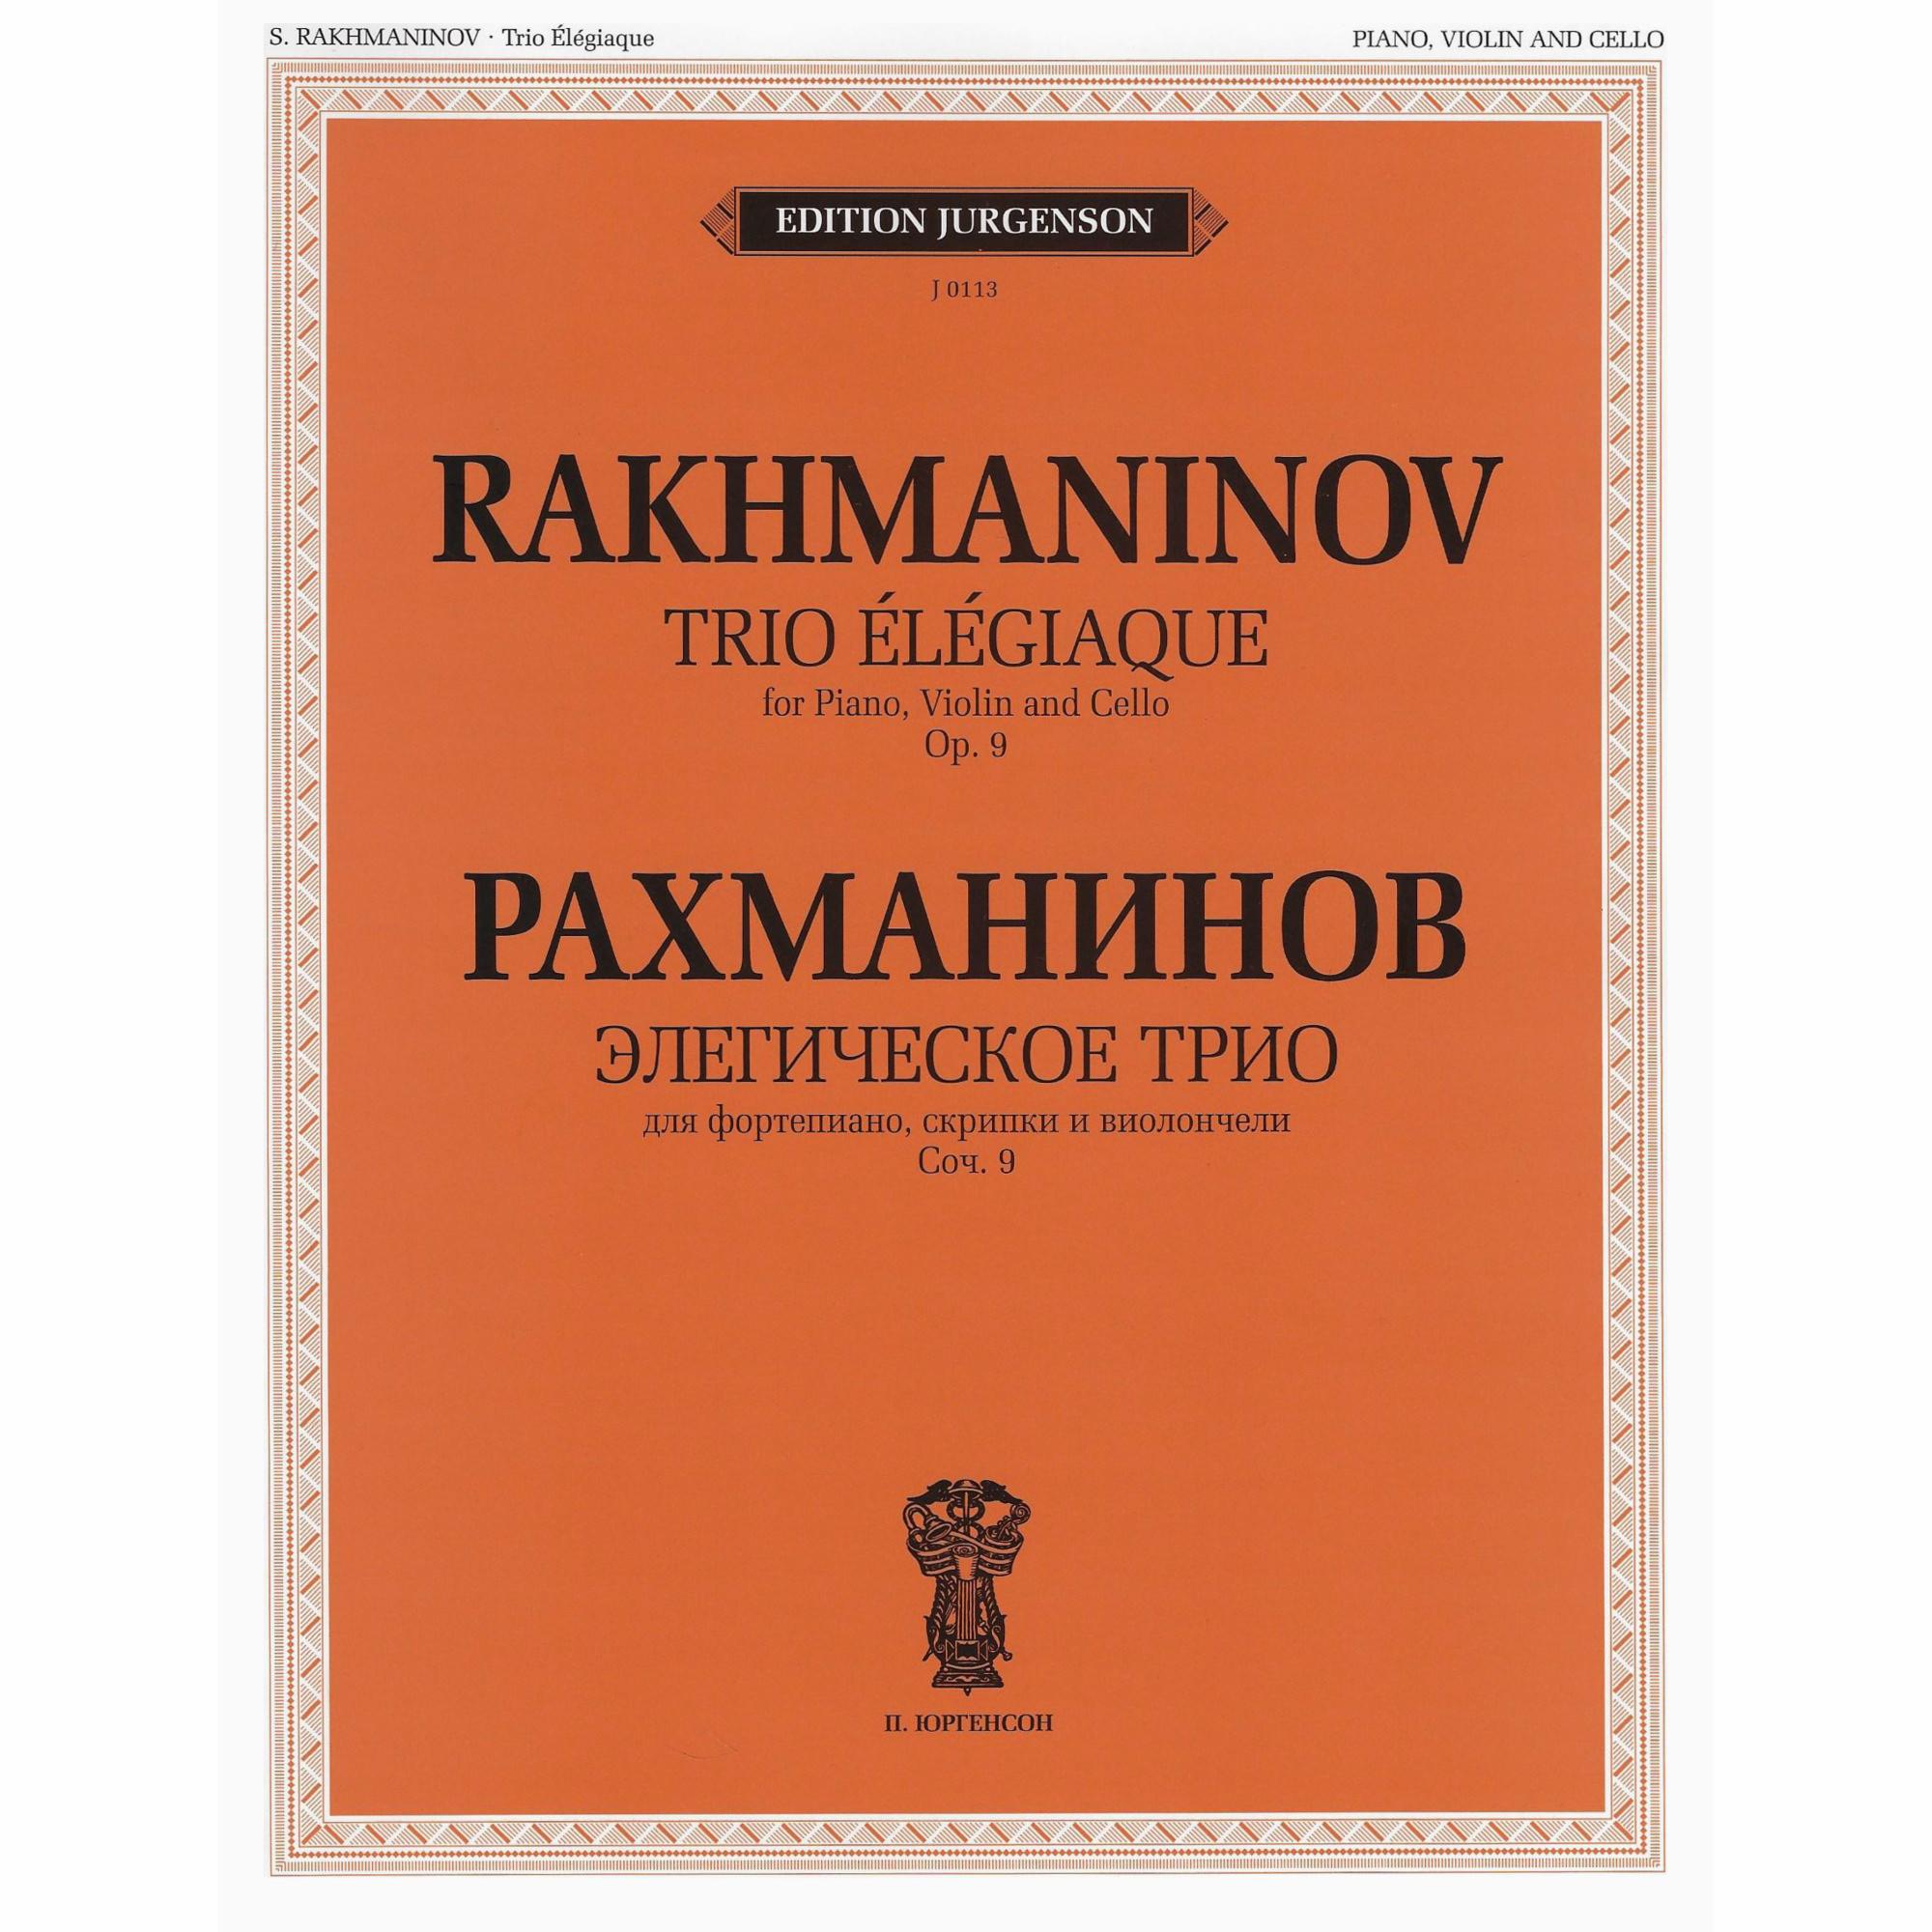 Rachmaninoff -- Trio Elegiaque, Op. 9